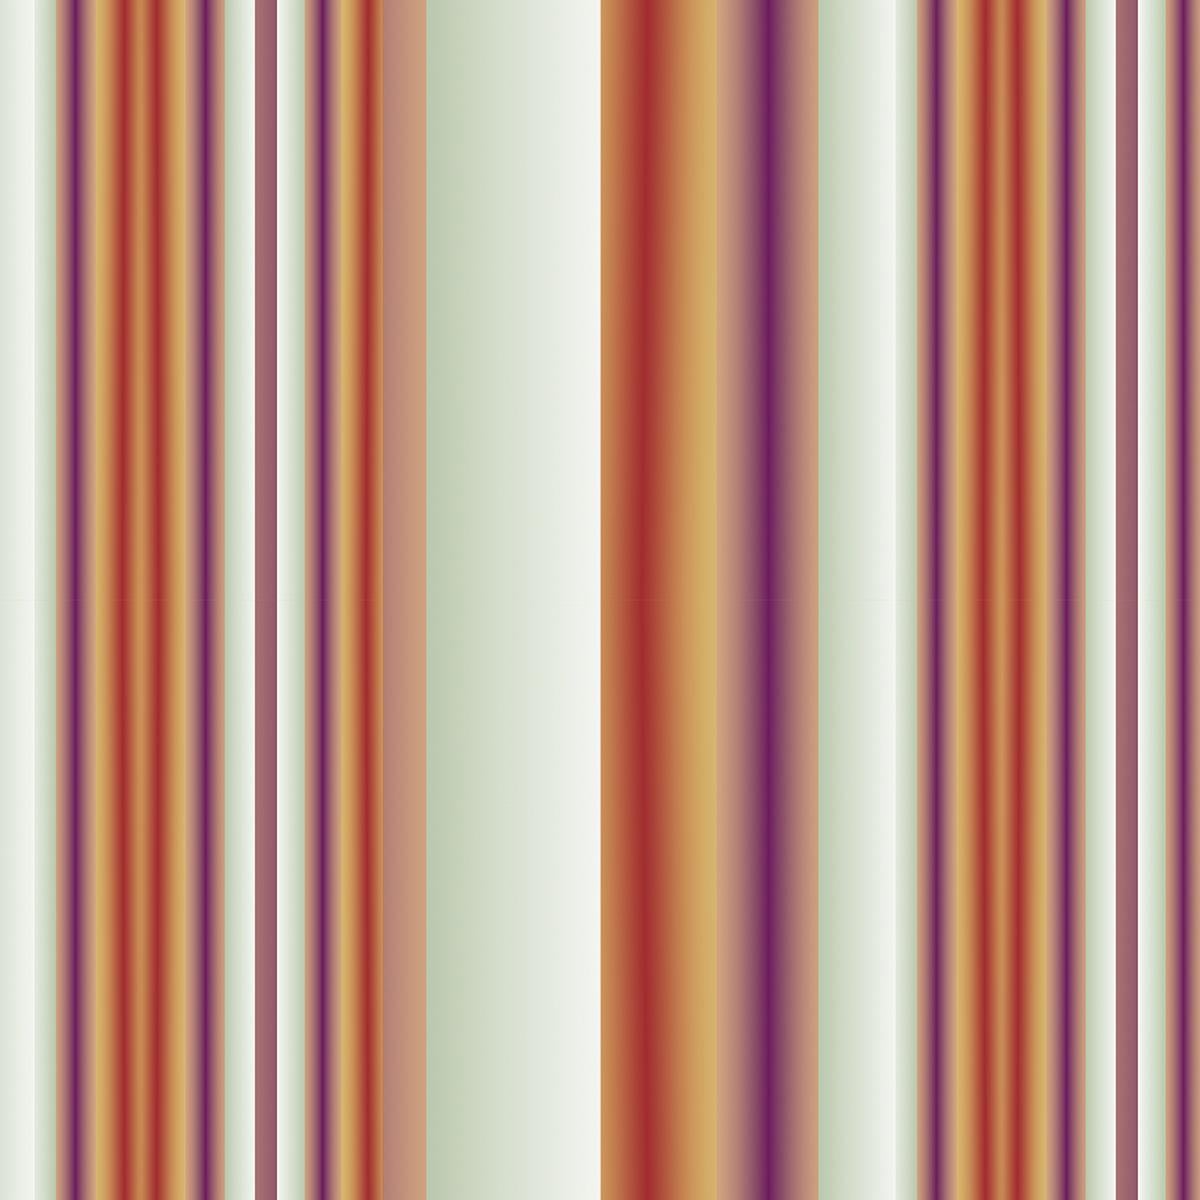 Rayure violet - orange
Inspiration : collection de rayures
Matière : 100% Polyster Velours
Taille 30-60 cm 11,8-23,6 Inch
Oreiller intérieur : plumes de duvet

Chantal Keizer, fondatrice de EST1966, est une artiste basée à Amsterdam connue pour ses